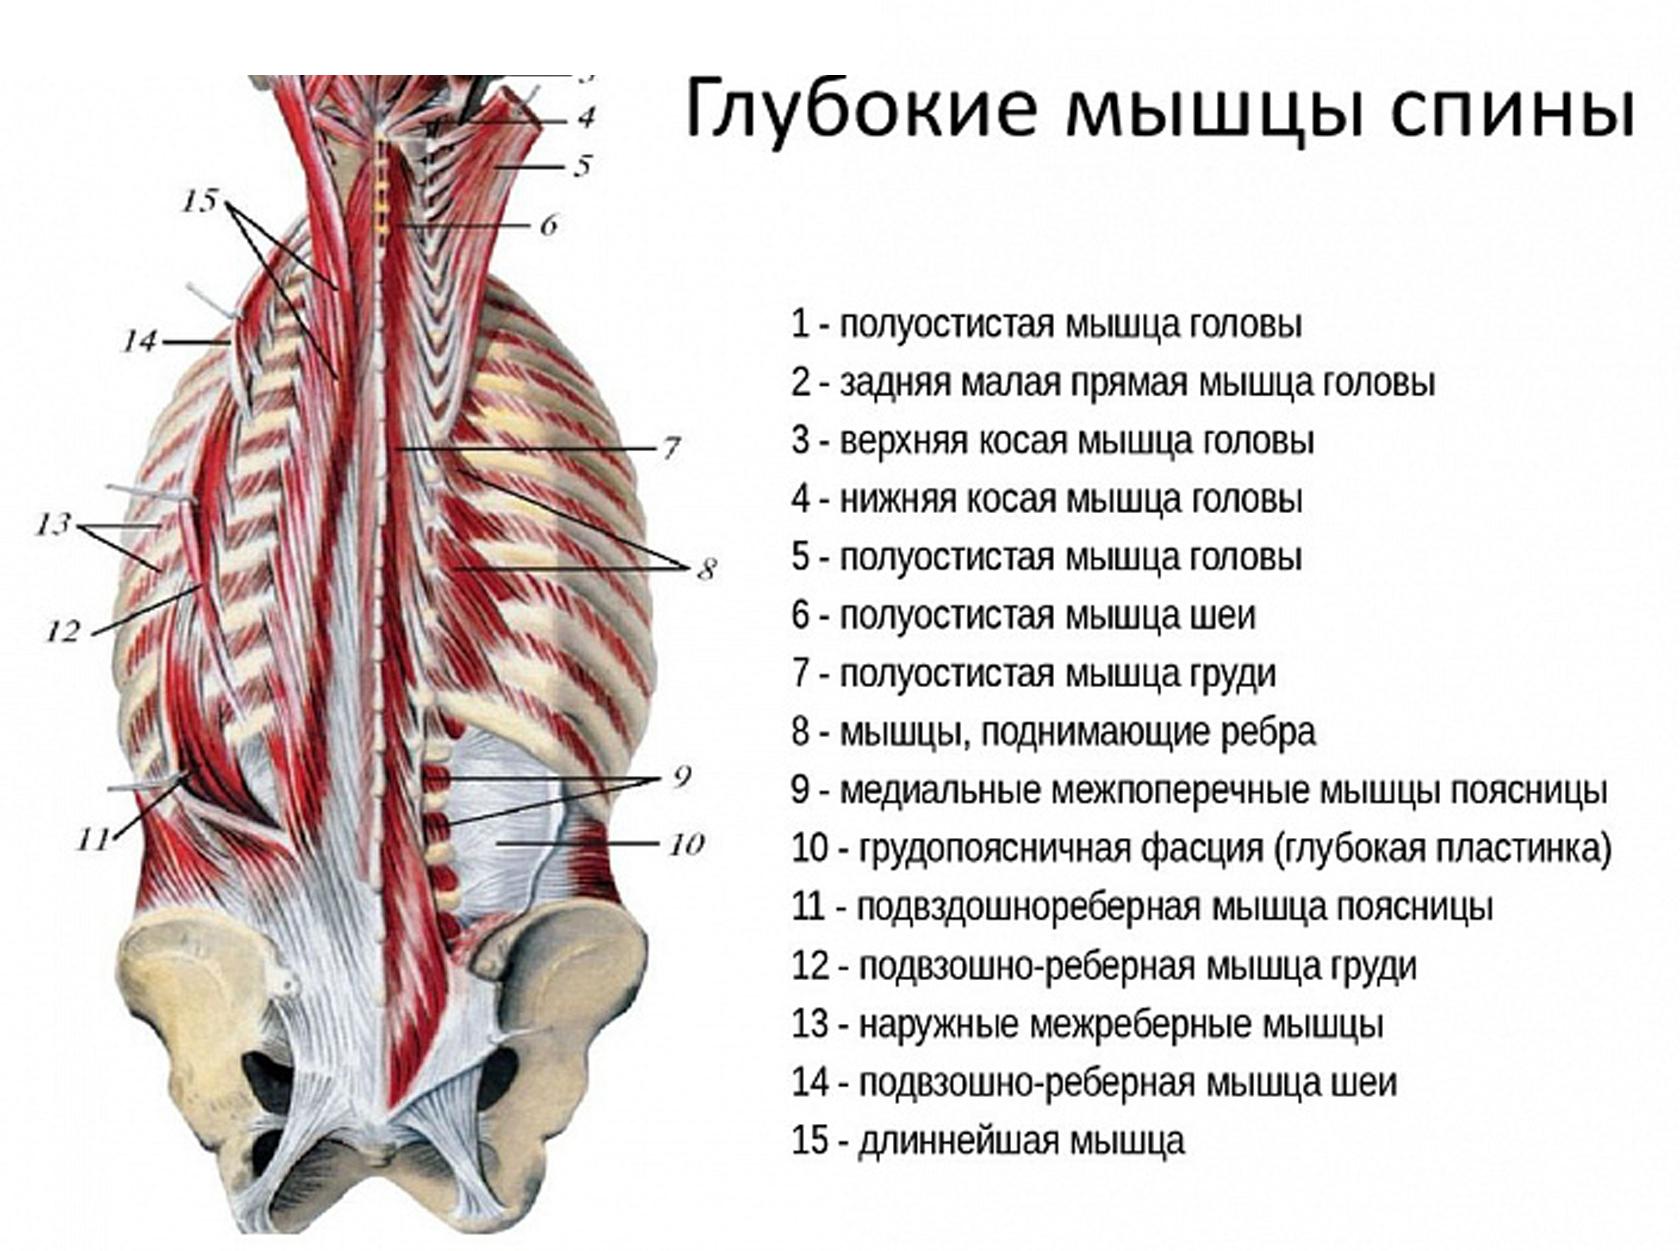 Анатомия на гръдния кош, гръбначния стълб, мускулите на гърба, раменния пояс